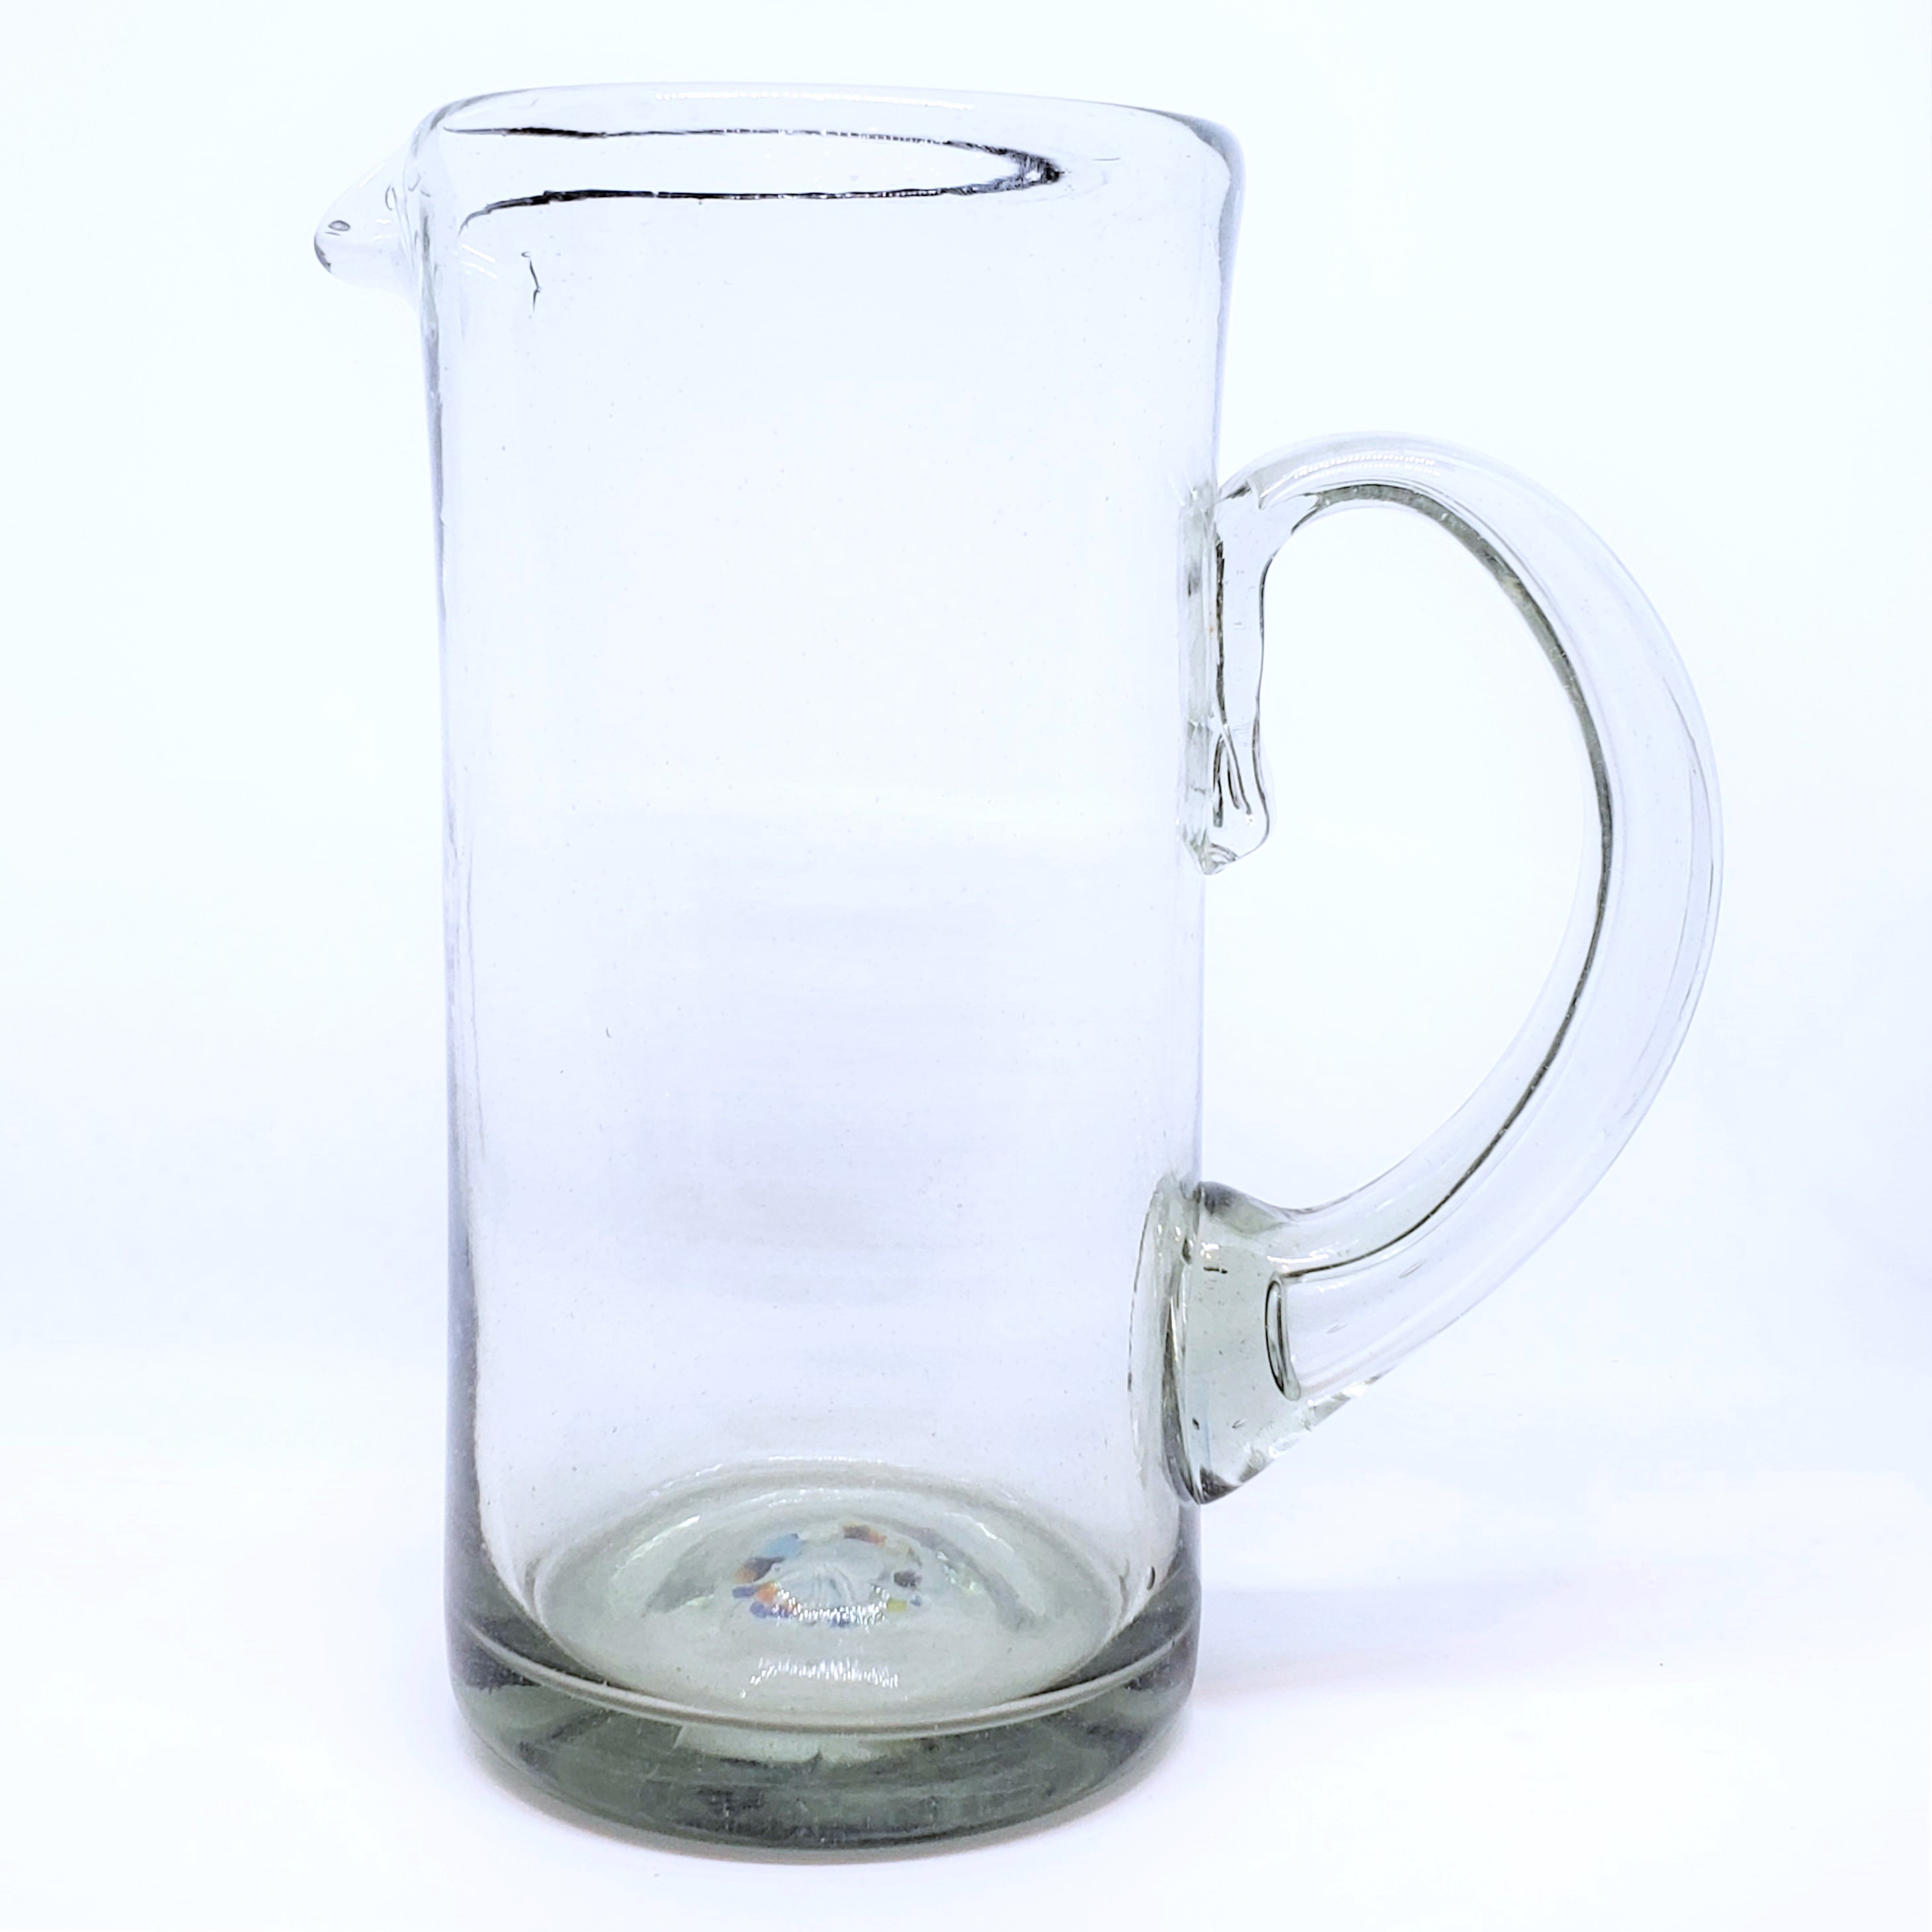 Novedades / Jarra Alta de 48 oz Transparente / Combine sus vasos transparentes con �sta hermosa y r�stica jarra alta.